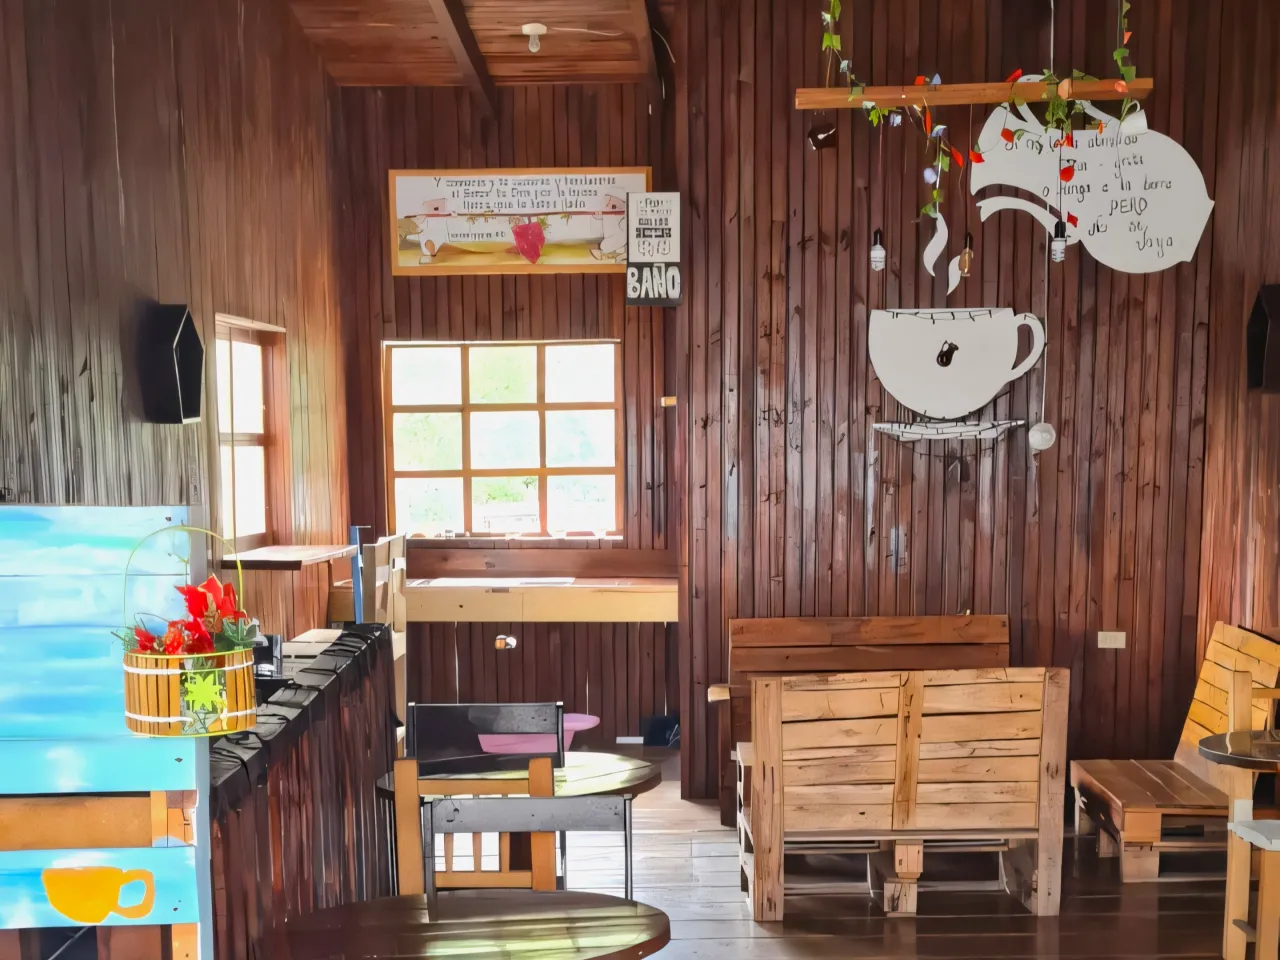 Área para tomar café cuenta con bancas de madera, y un par de ventanas que brindan iluminación natural al interior de la casa.